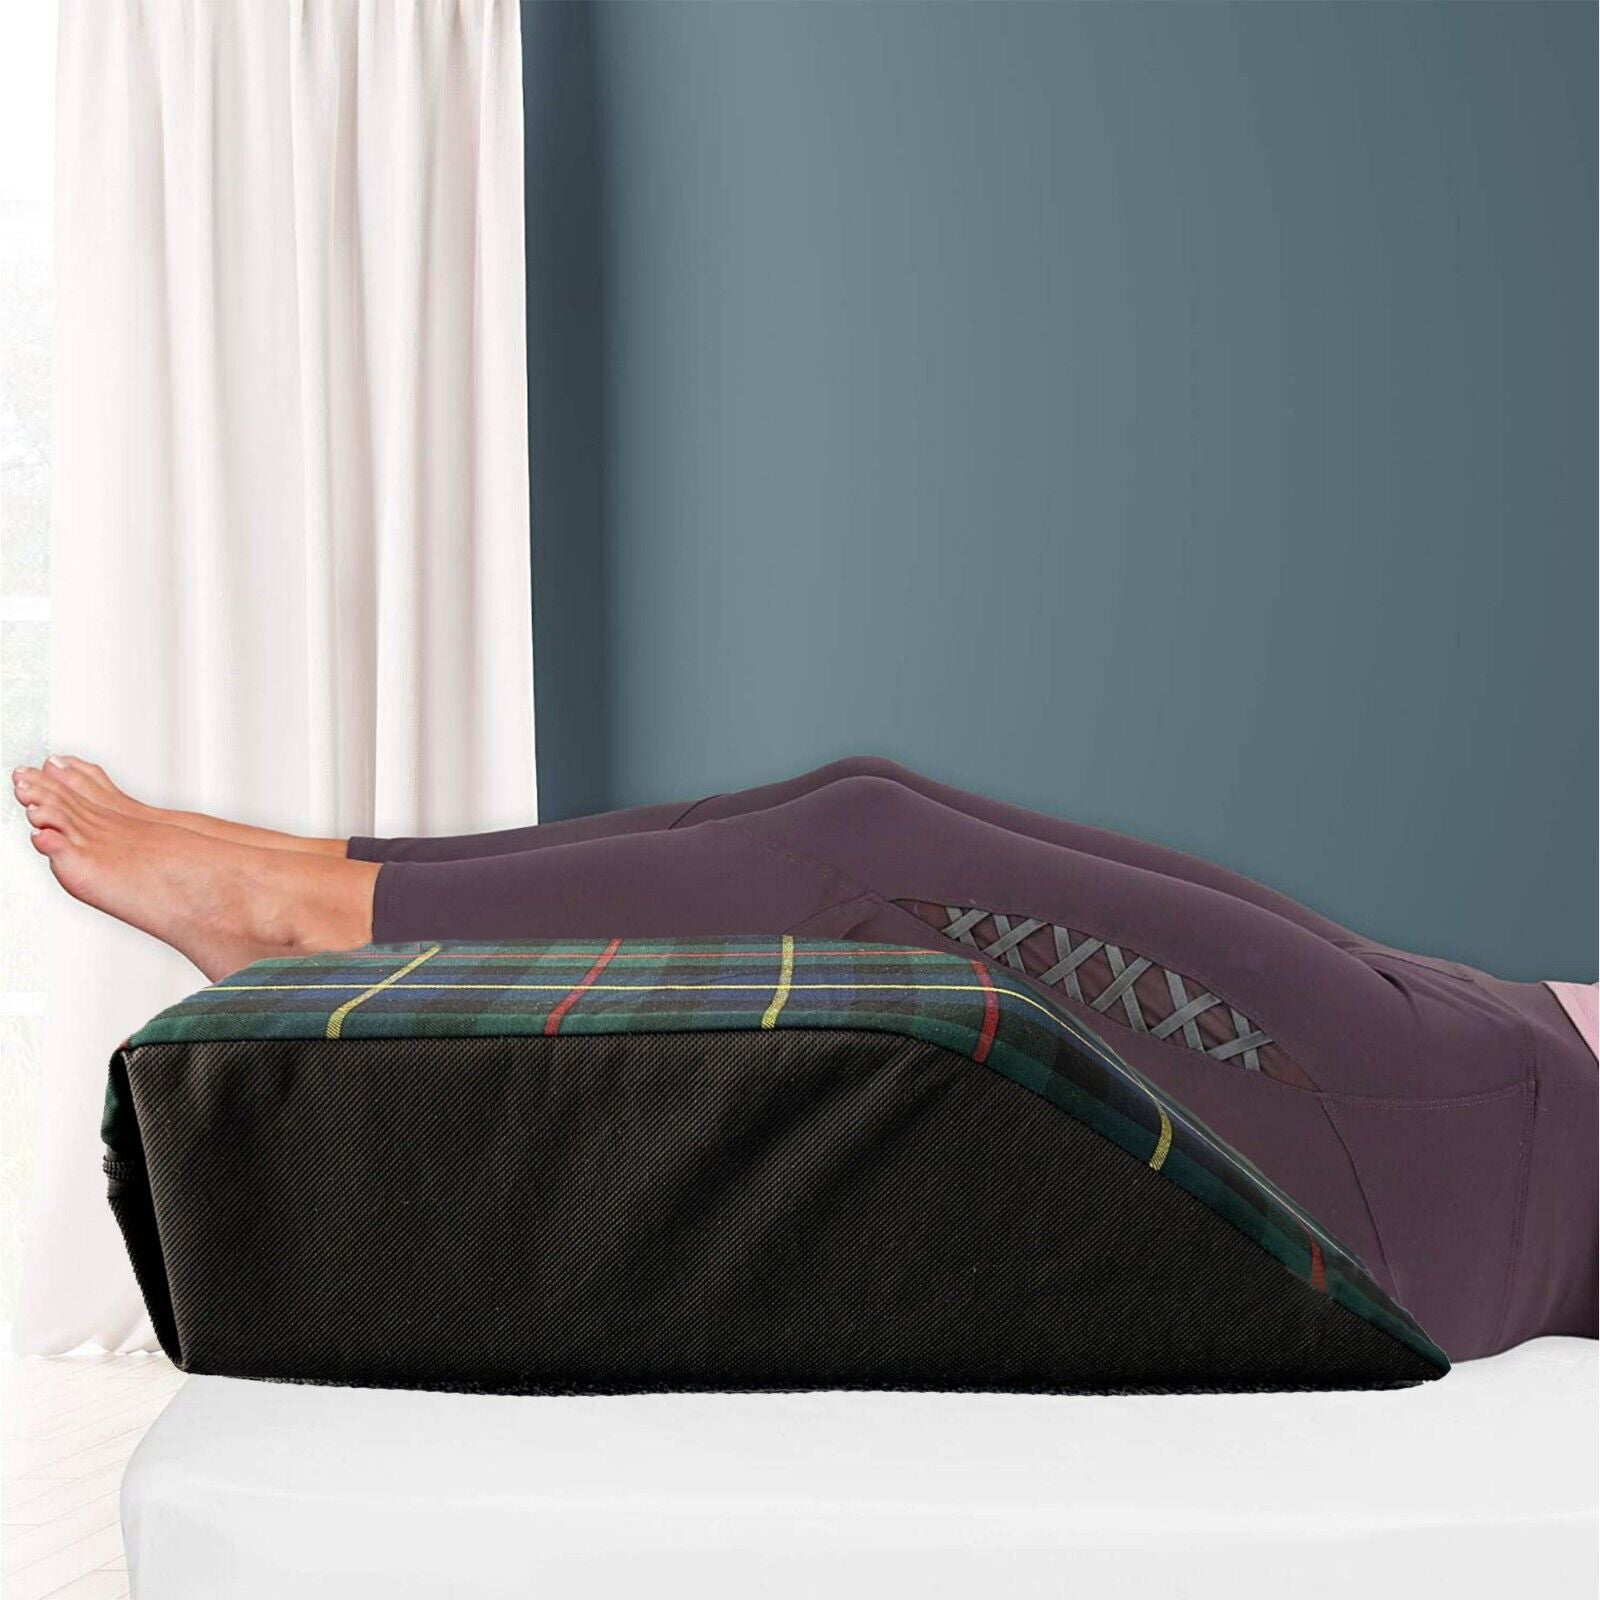 Tartan Designs Leg Pillow Elevating Wedge Foam Rest Pillow Back Hip Knee Support